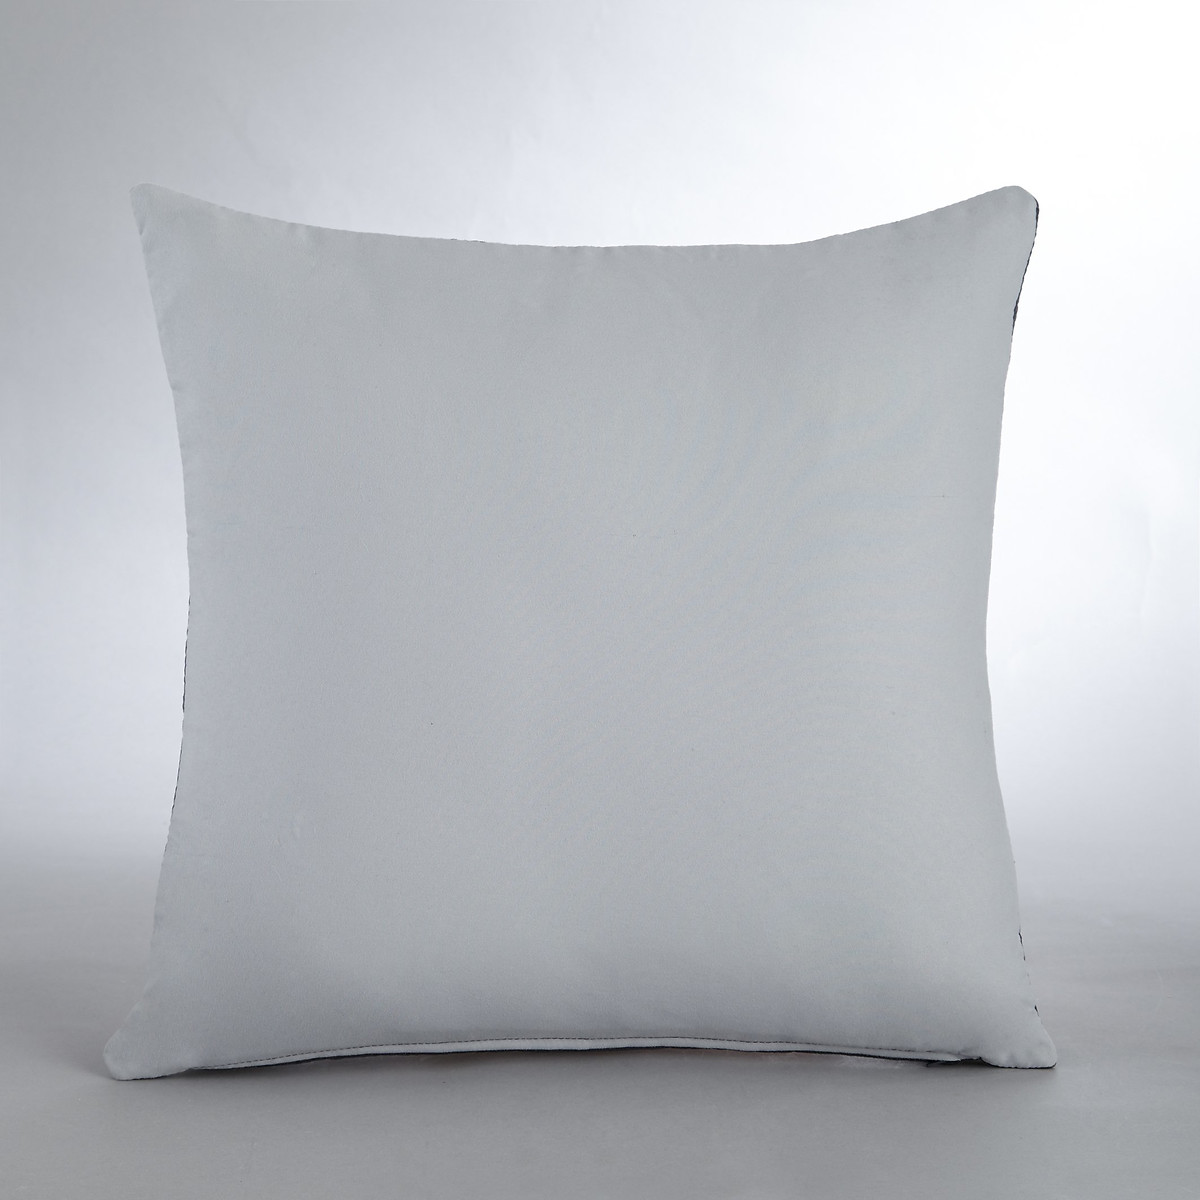 Наволочка LaRedoute На подушку-валик Aima 40 x 40 см серый, размер 40 x 40 см - фото 4